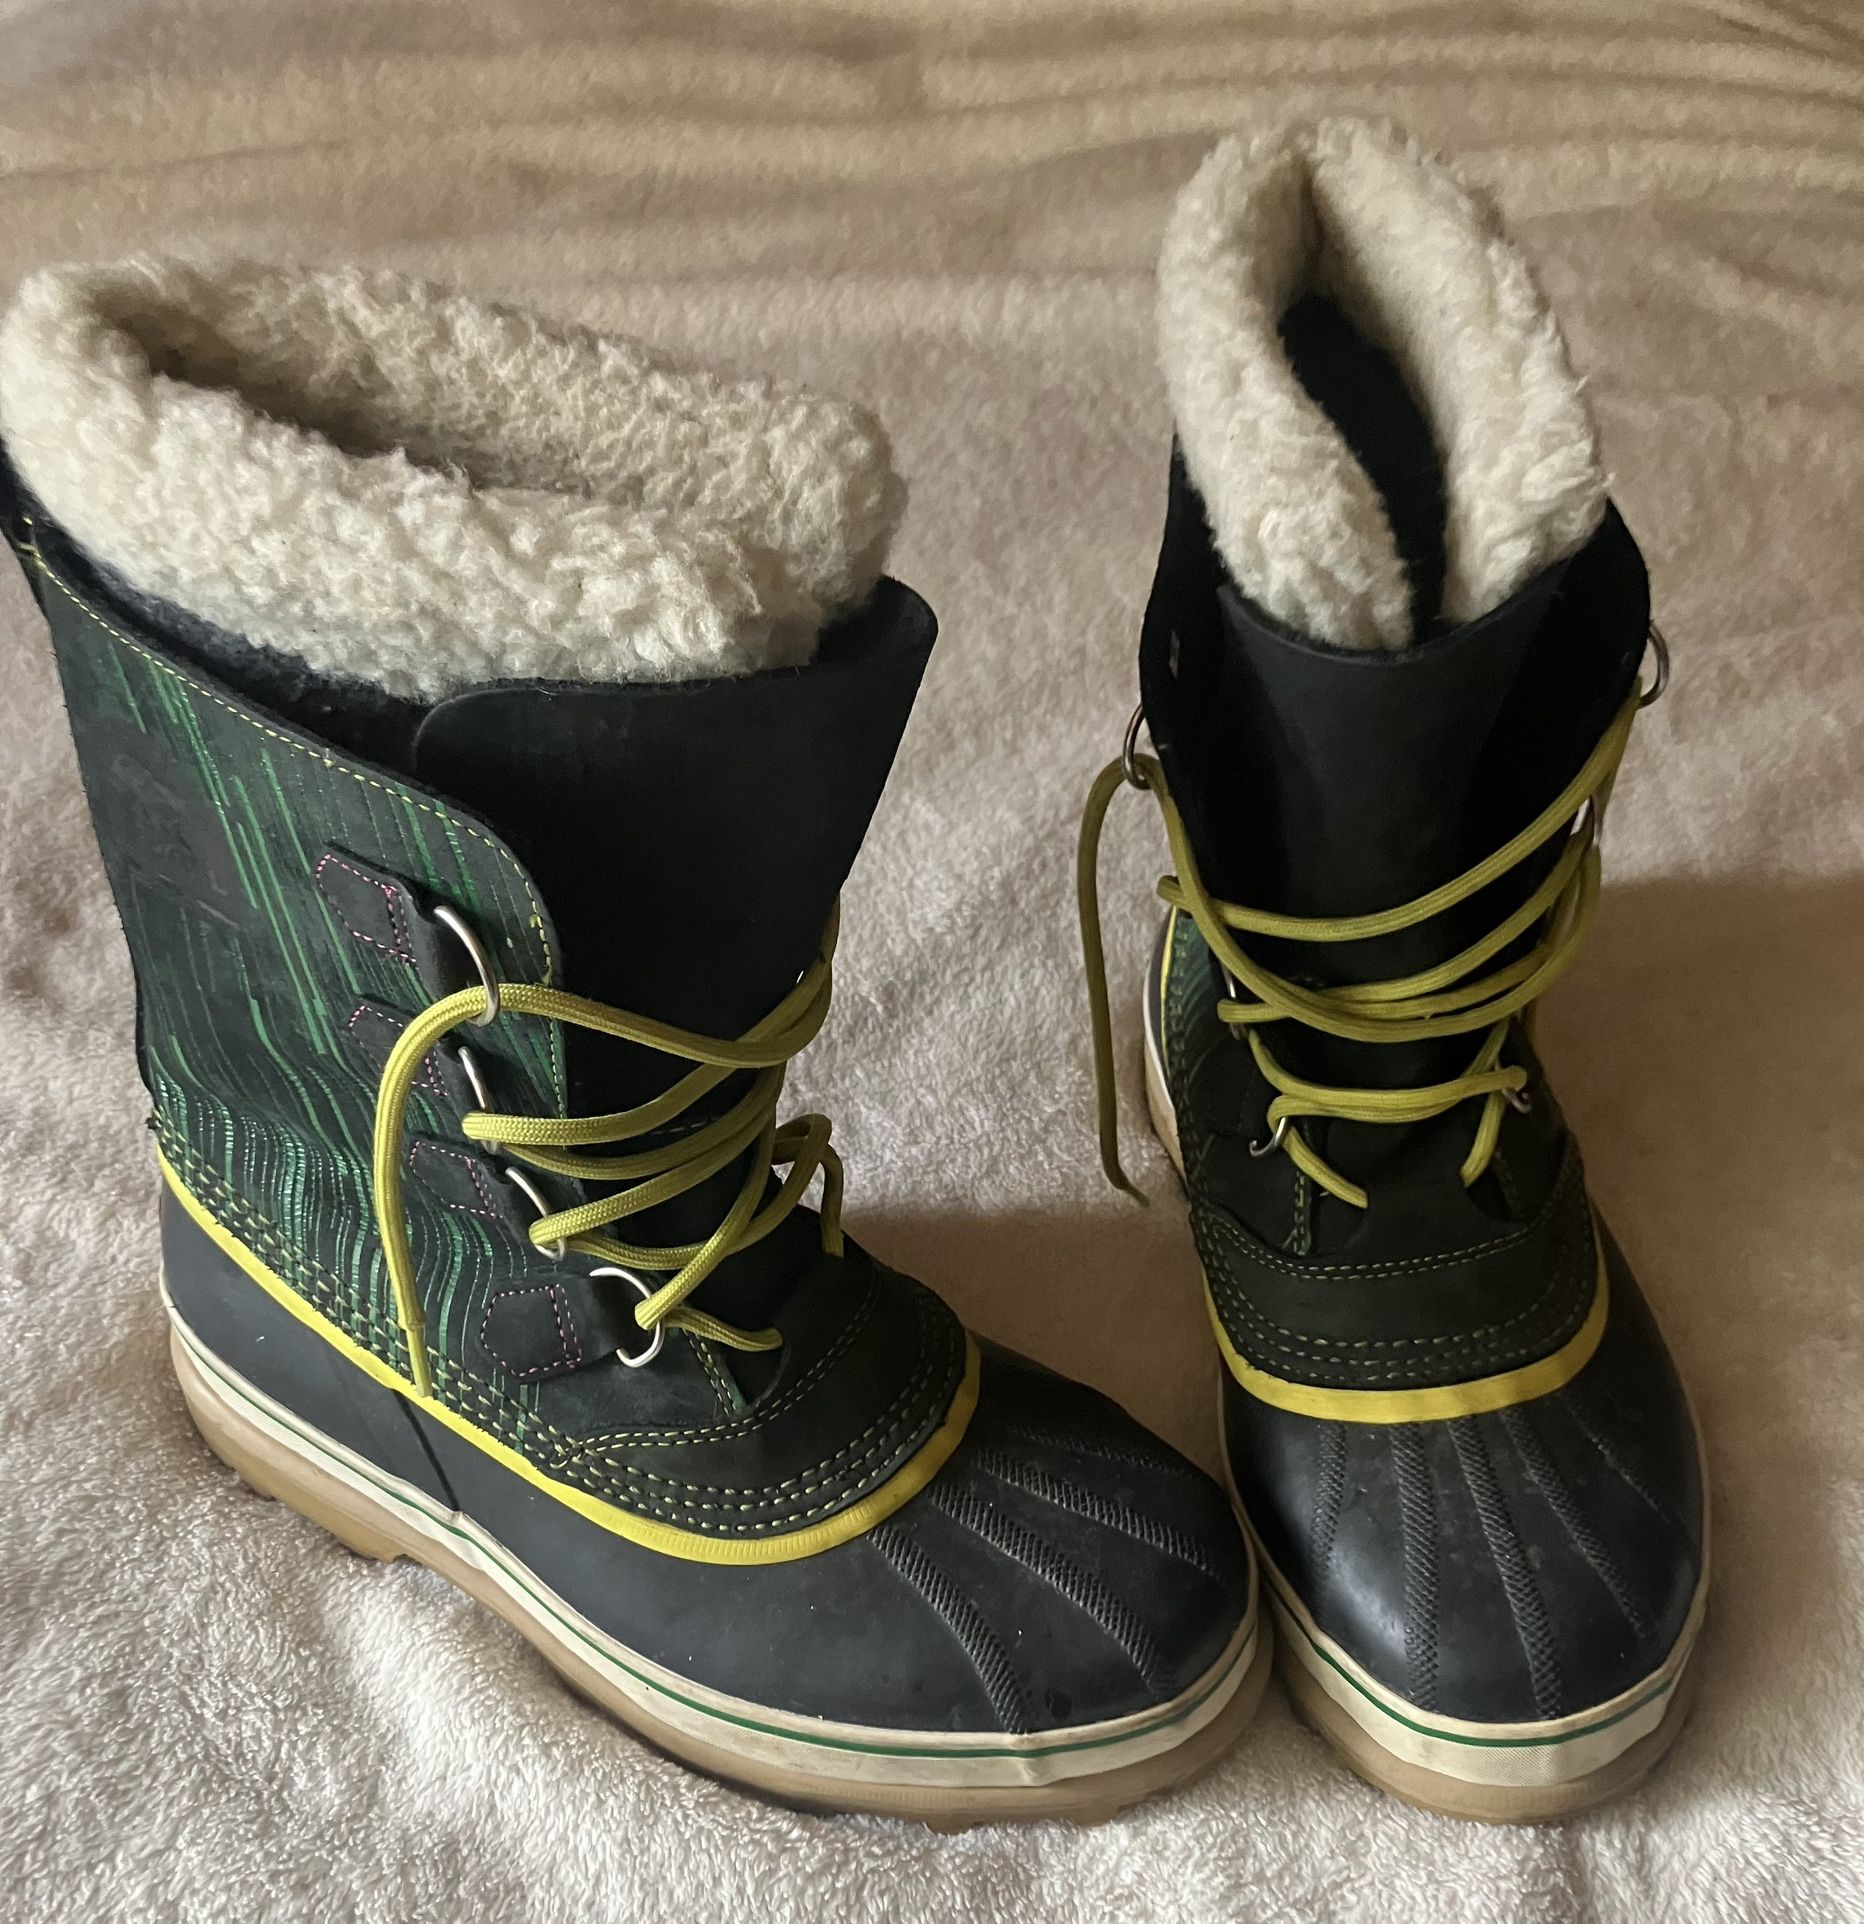 Men's sz 9 Sorel Waterproof Boots 